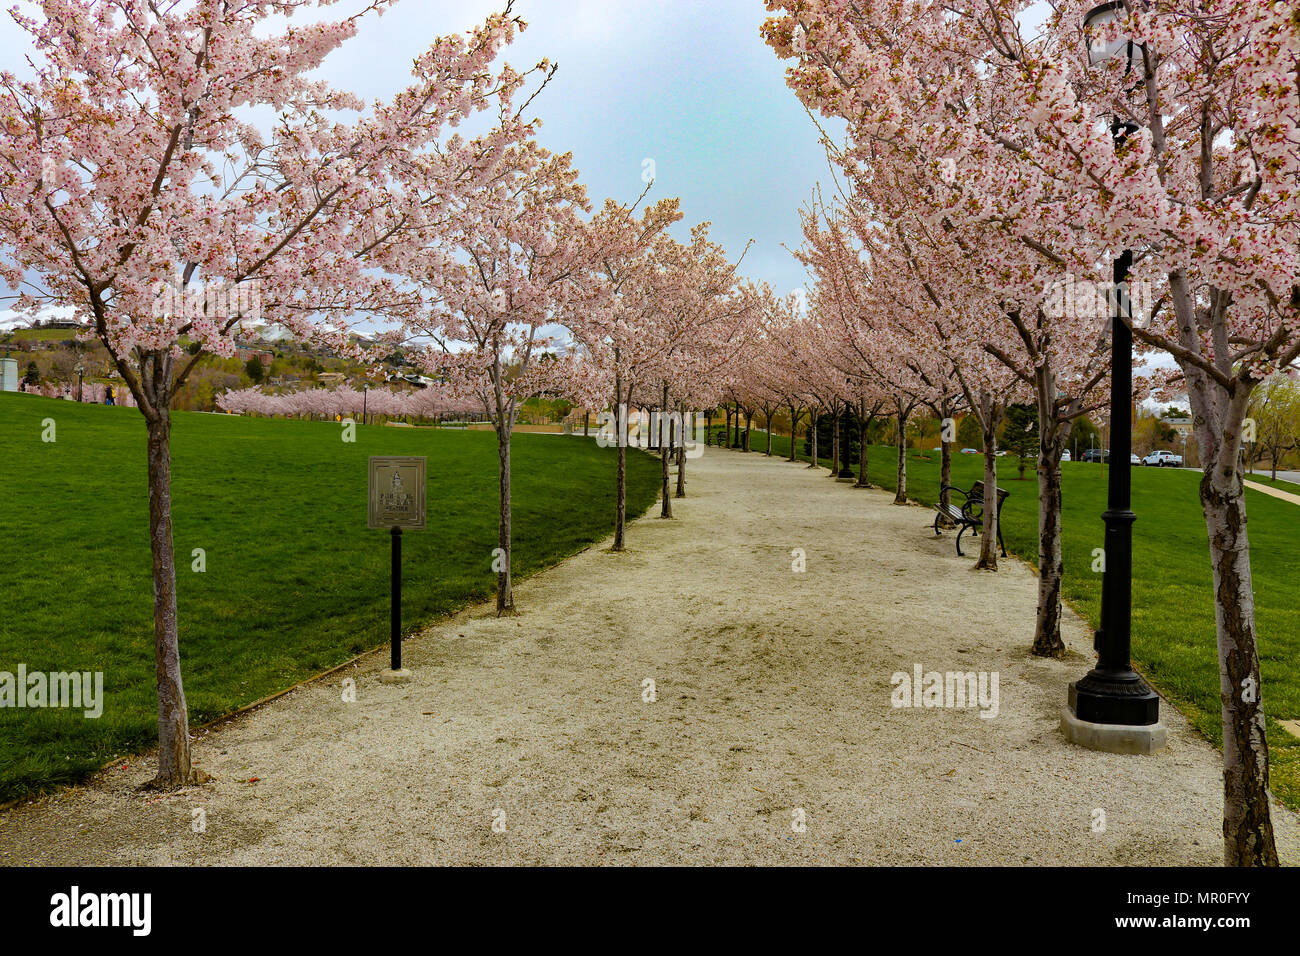 Park weg durch die Kirschbäume blühen Bäume ist in Salt Lake City Utah State Hauptstadt entfernt. Weg zu neu, um ein neues Leben als Frühling zeigt seine Pracht Stockfoto